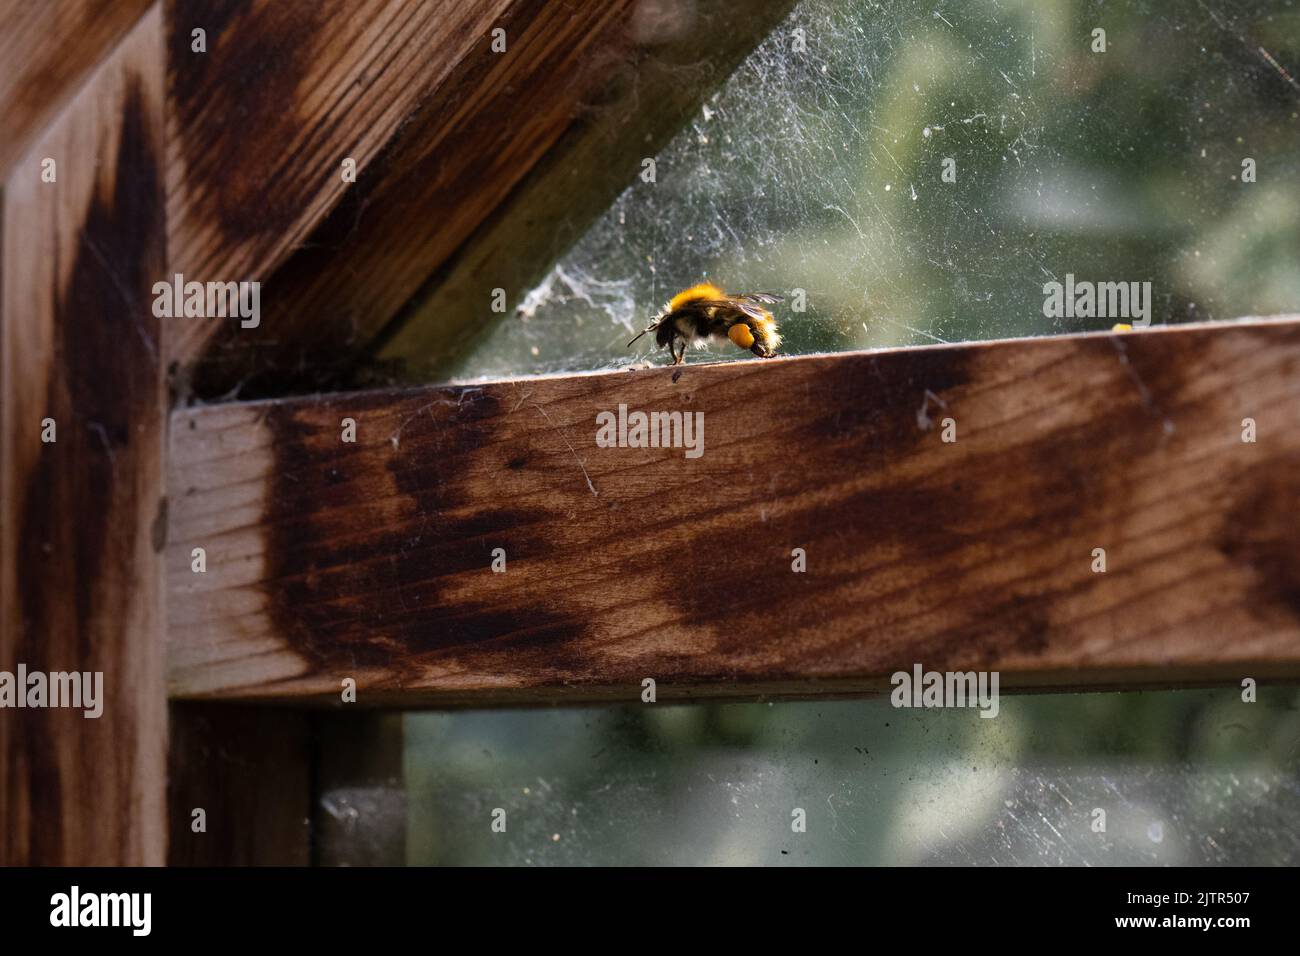 Abeille piégée - abeille commune piégée dans la serre - Royaume-Uni Banque D'Images